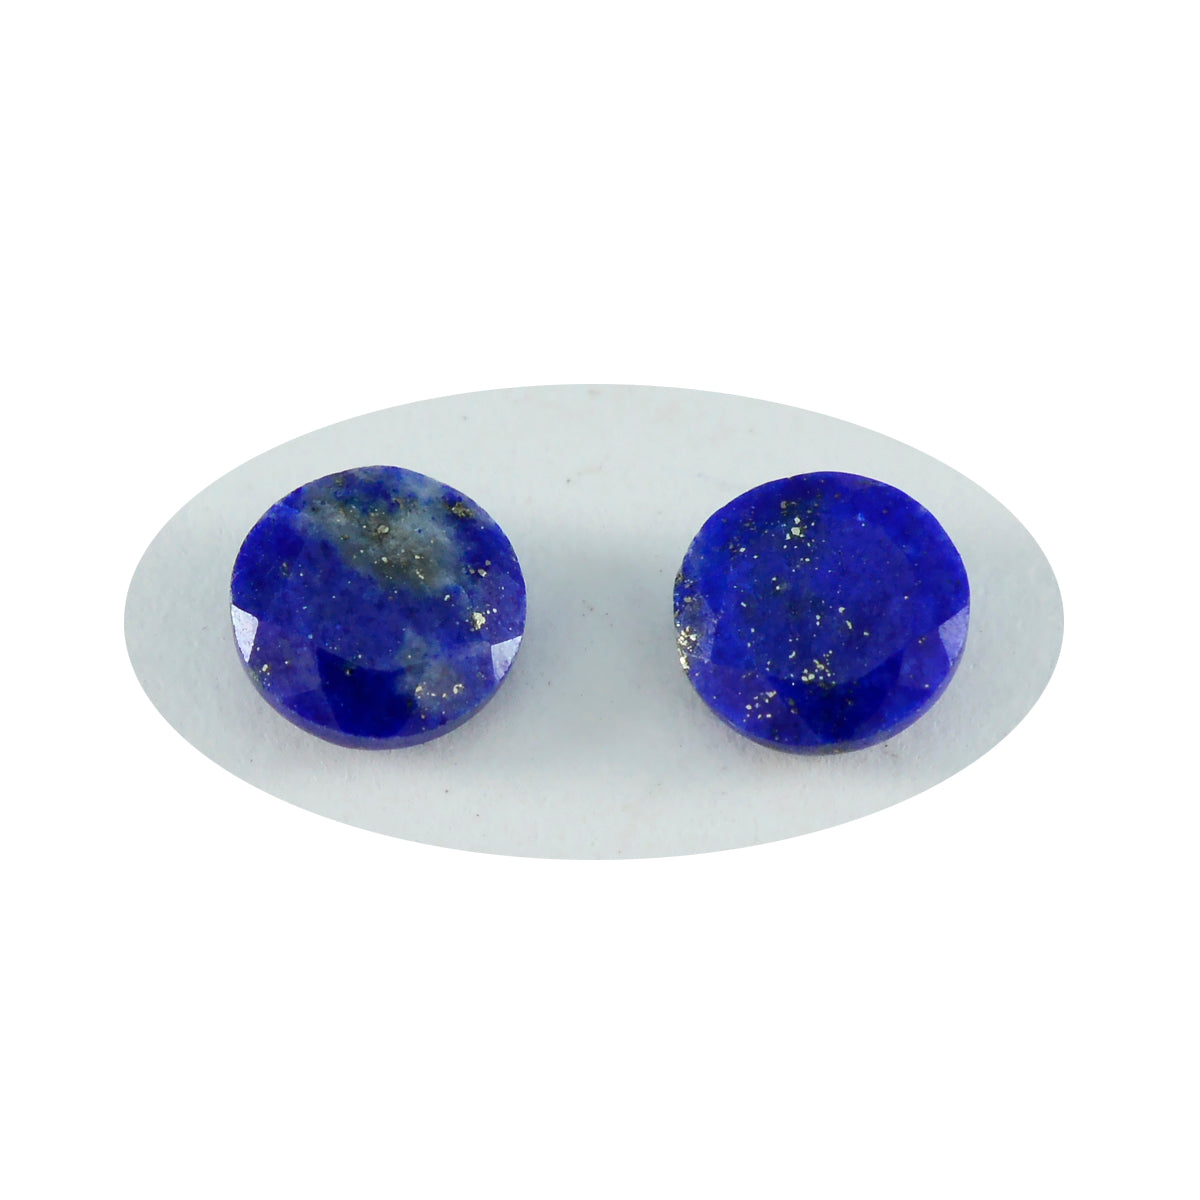 Riyogems 1 Stück echter blauer Lapislazuli, facettiert, 13 x 13 mm, runde Form, schöner Qualitätsstein